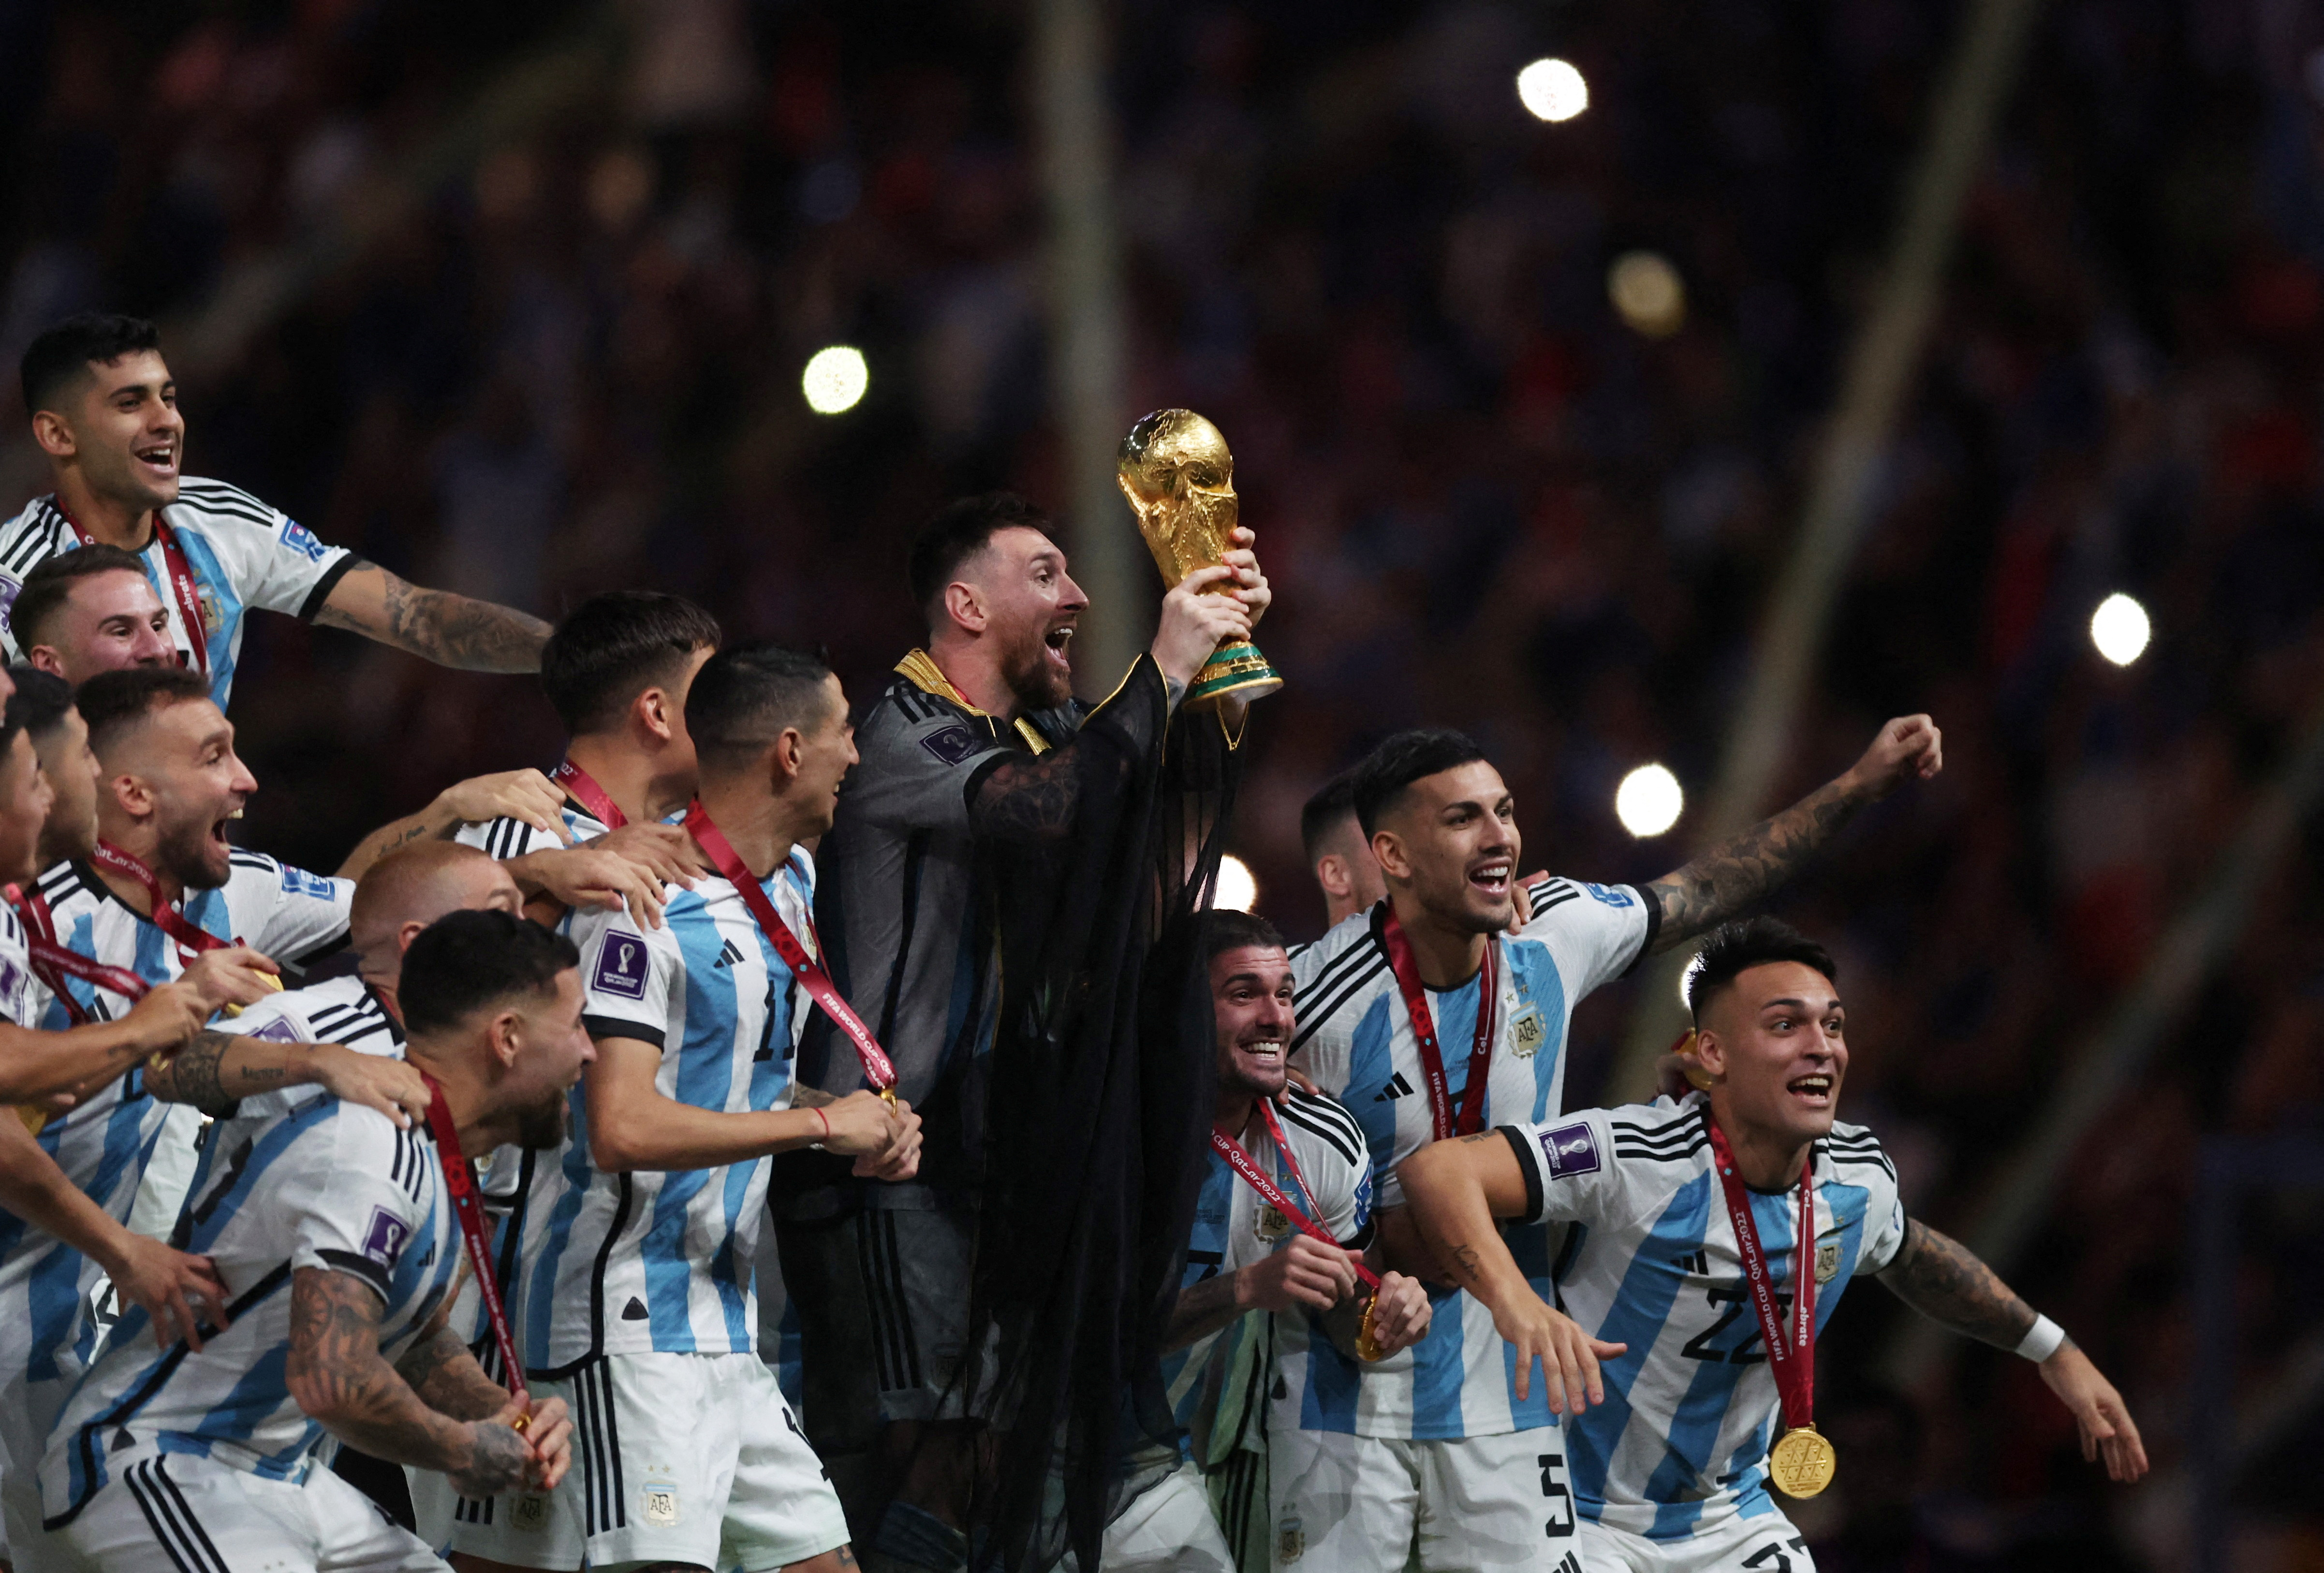 El cuadro albiceleste marcó la victoria en el Mundial de la FIFA por tercera vez en la historia del país sudamericano. (REUTERS/Lee Smith)